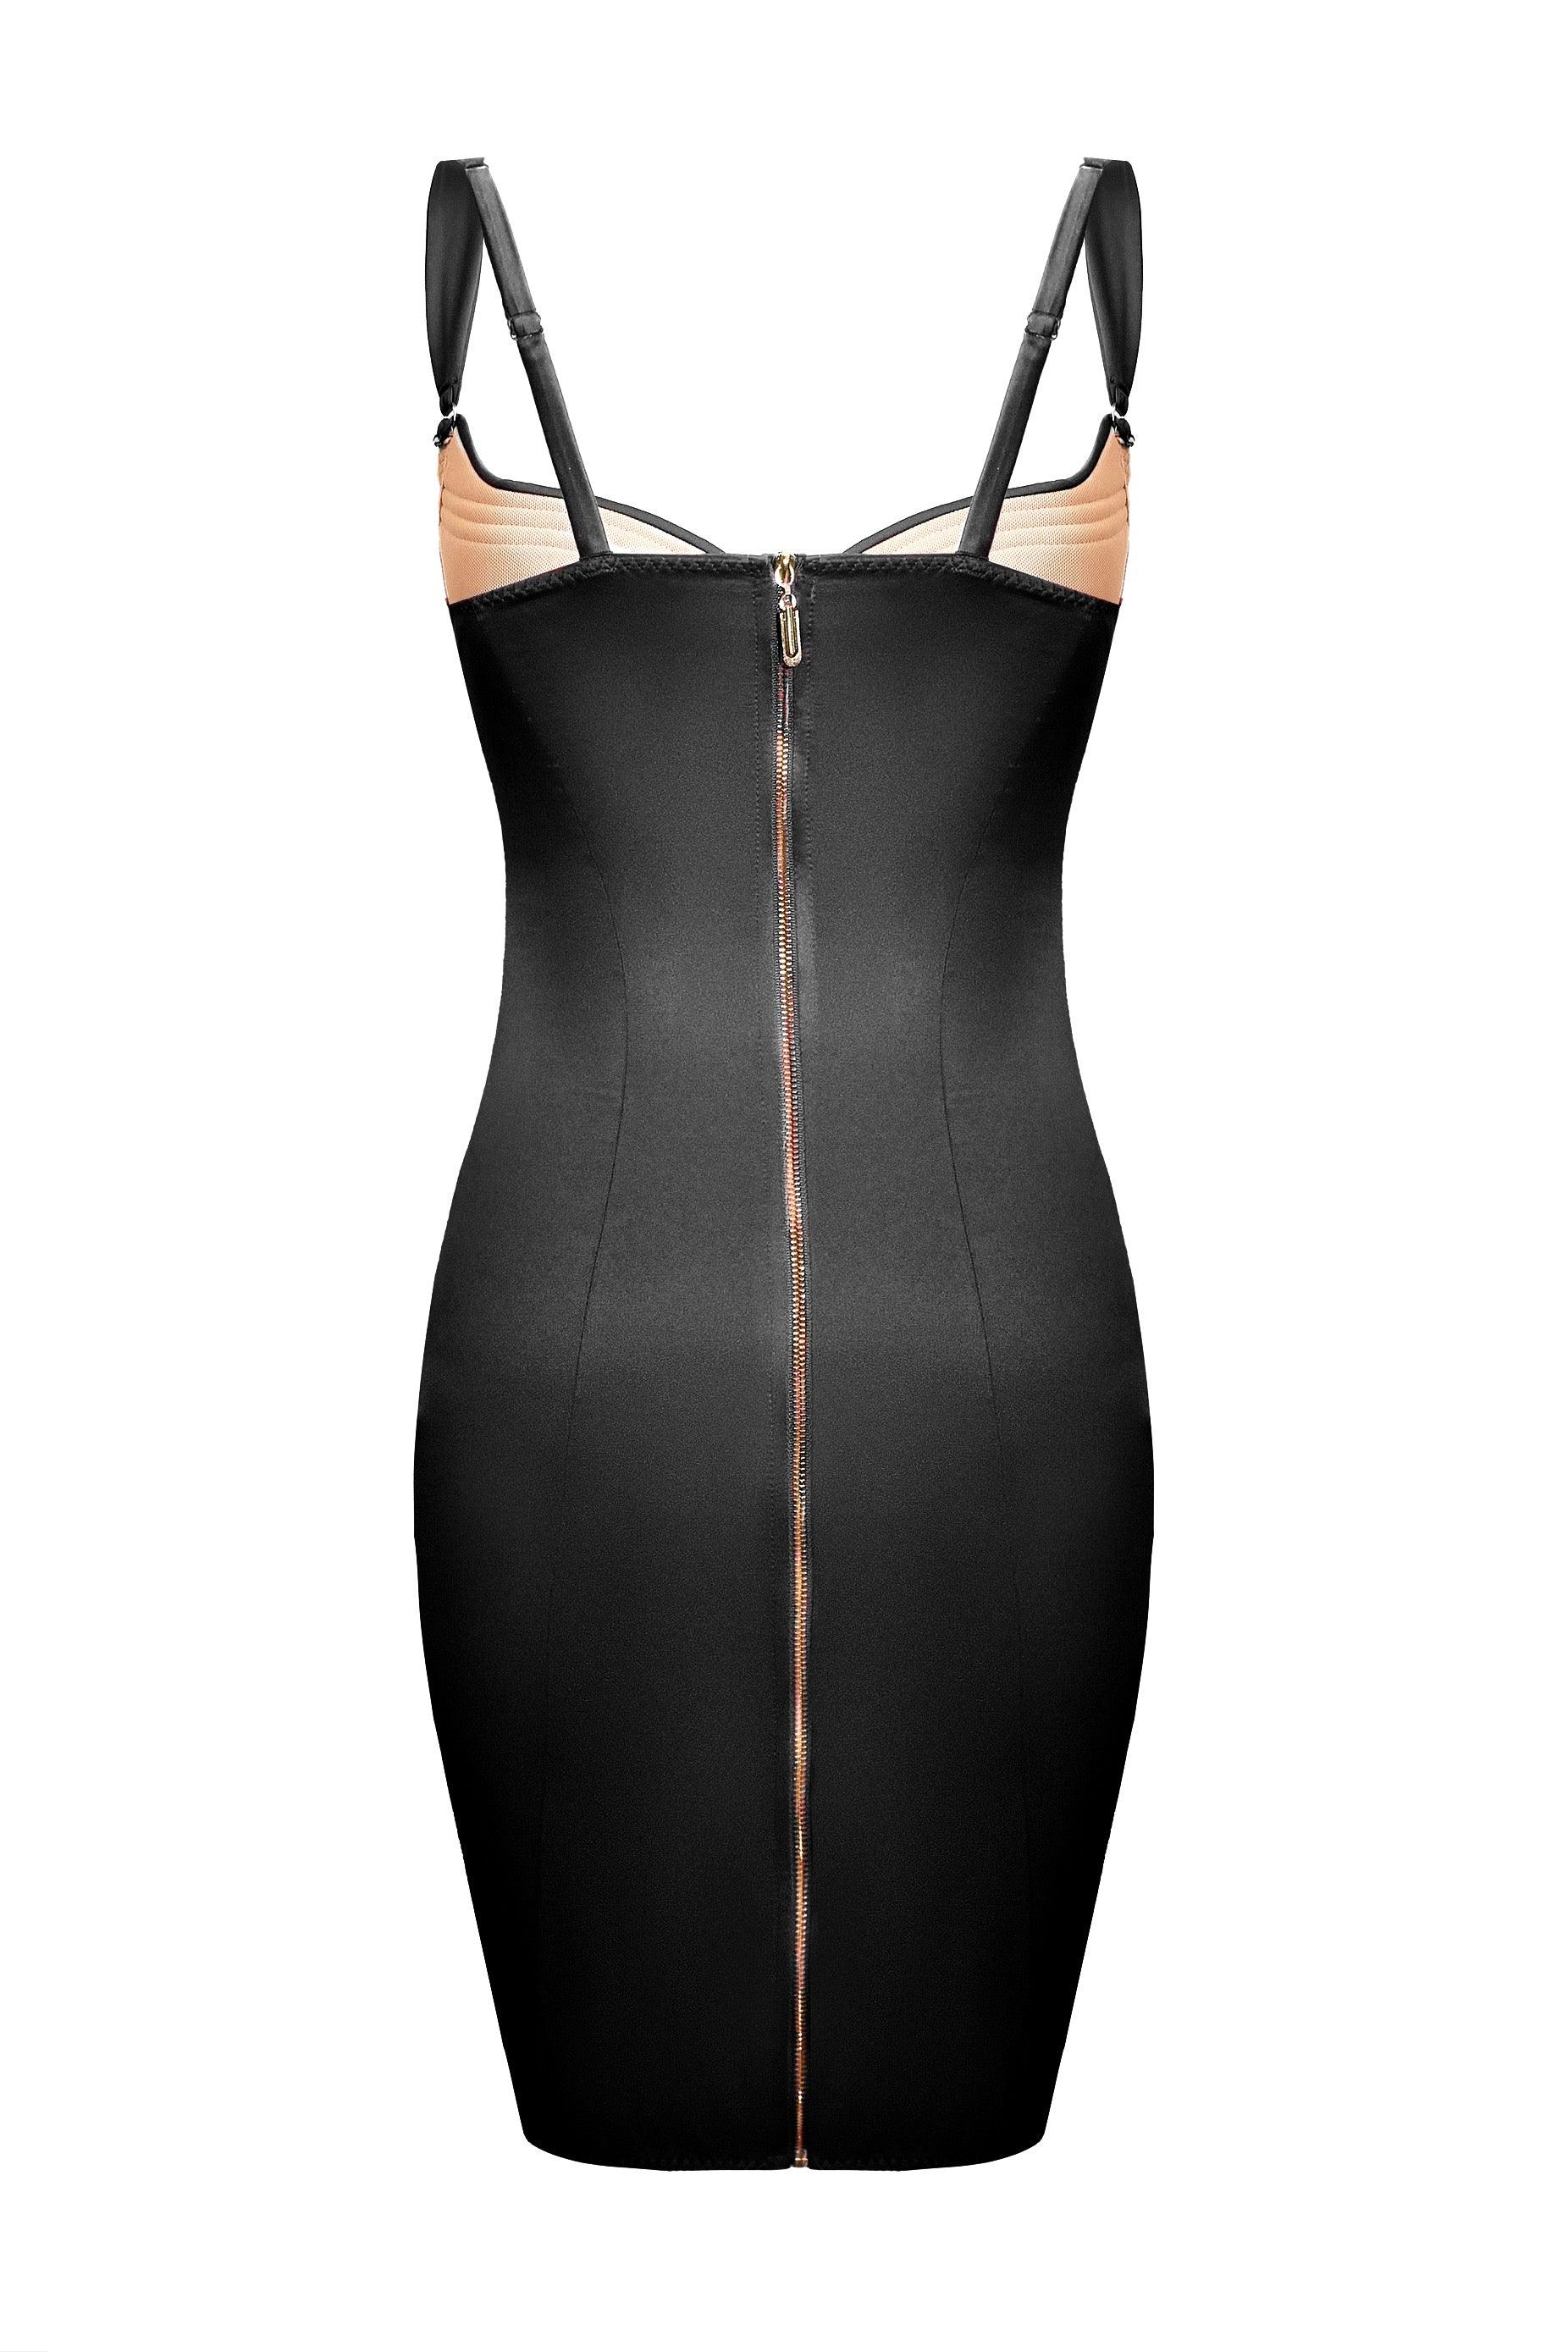 Cymothoe Black dress - yesUndress